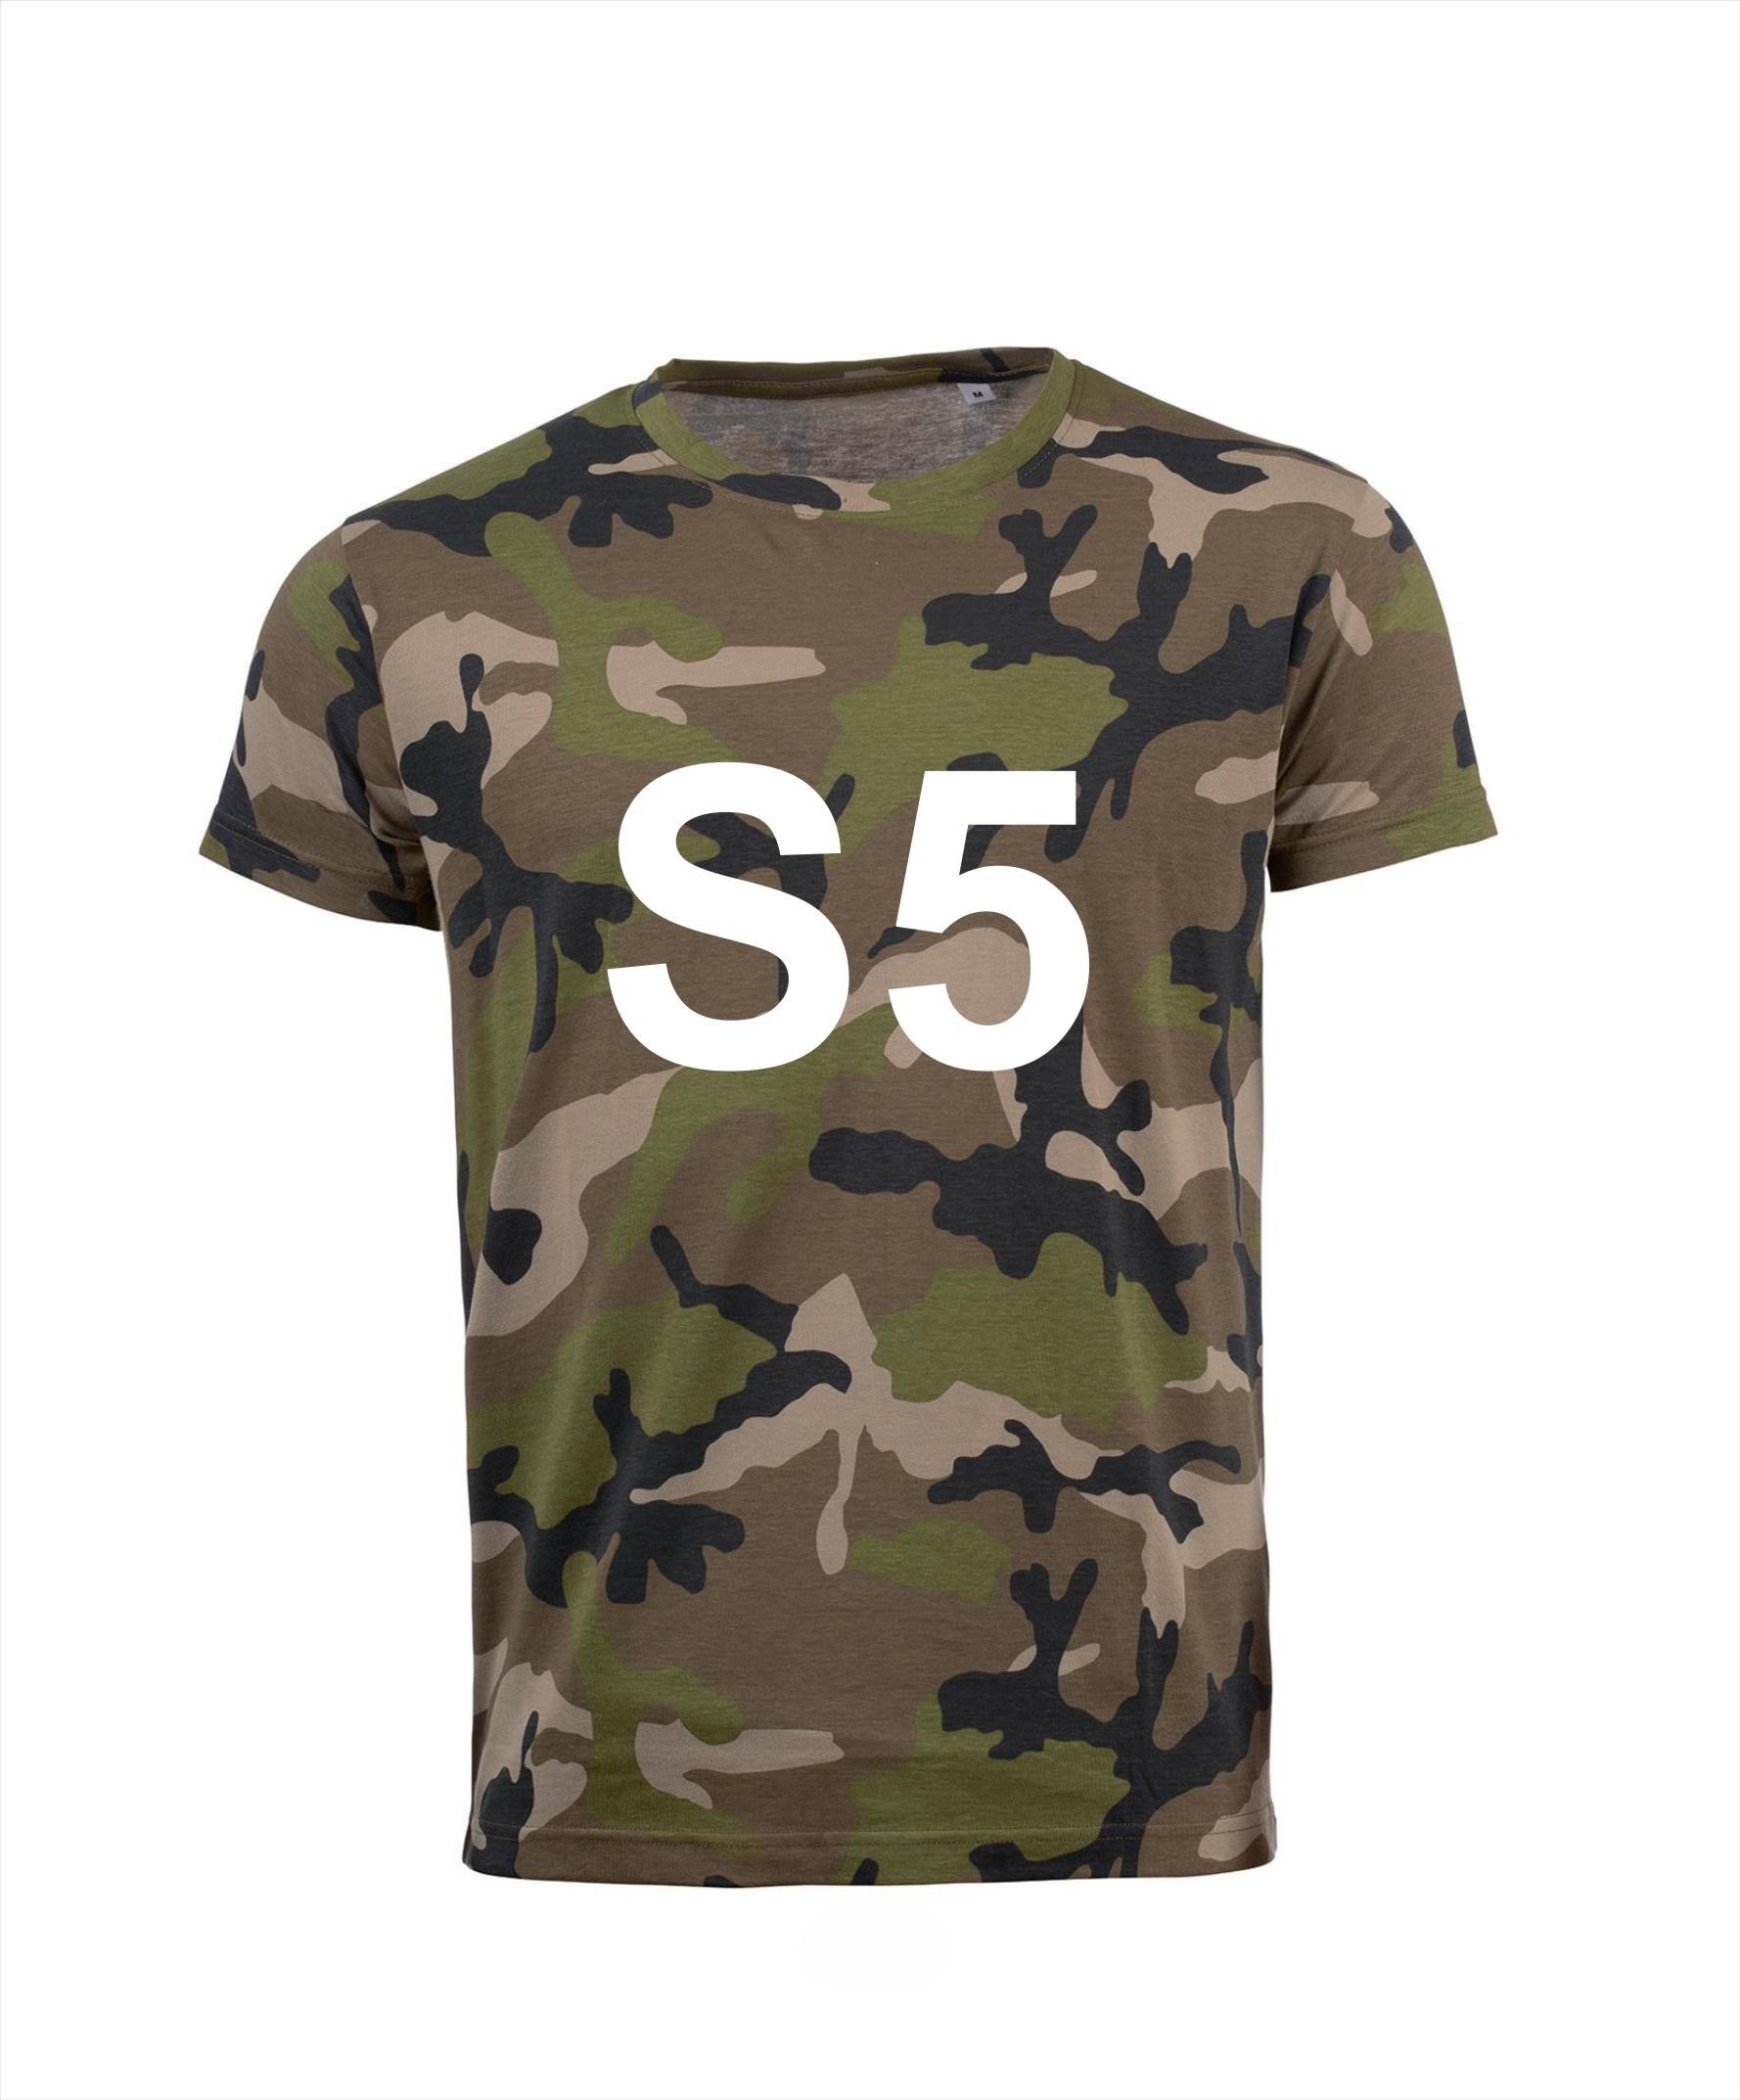 T-shirt S5 leger camouflage legergroen afgekeurd dienstplicht soldaat carnaval